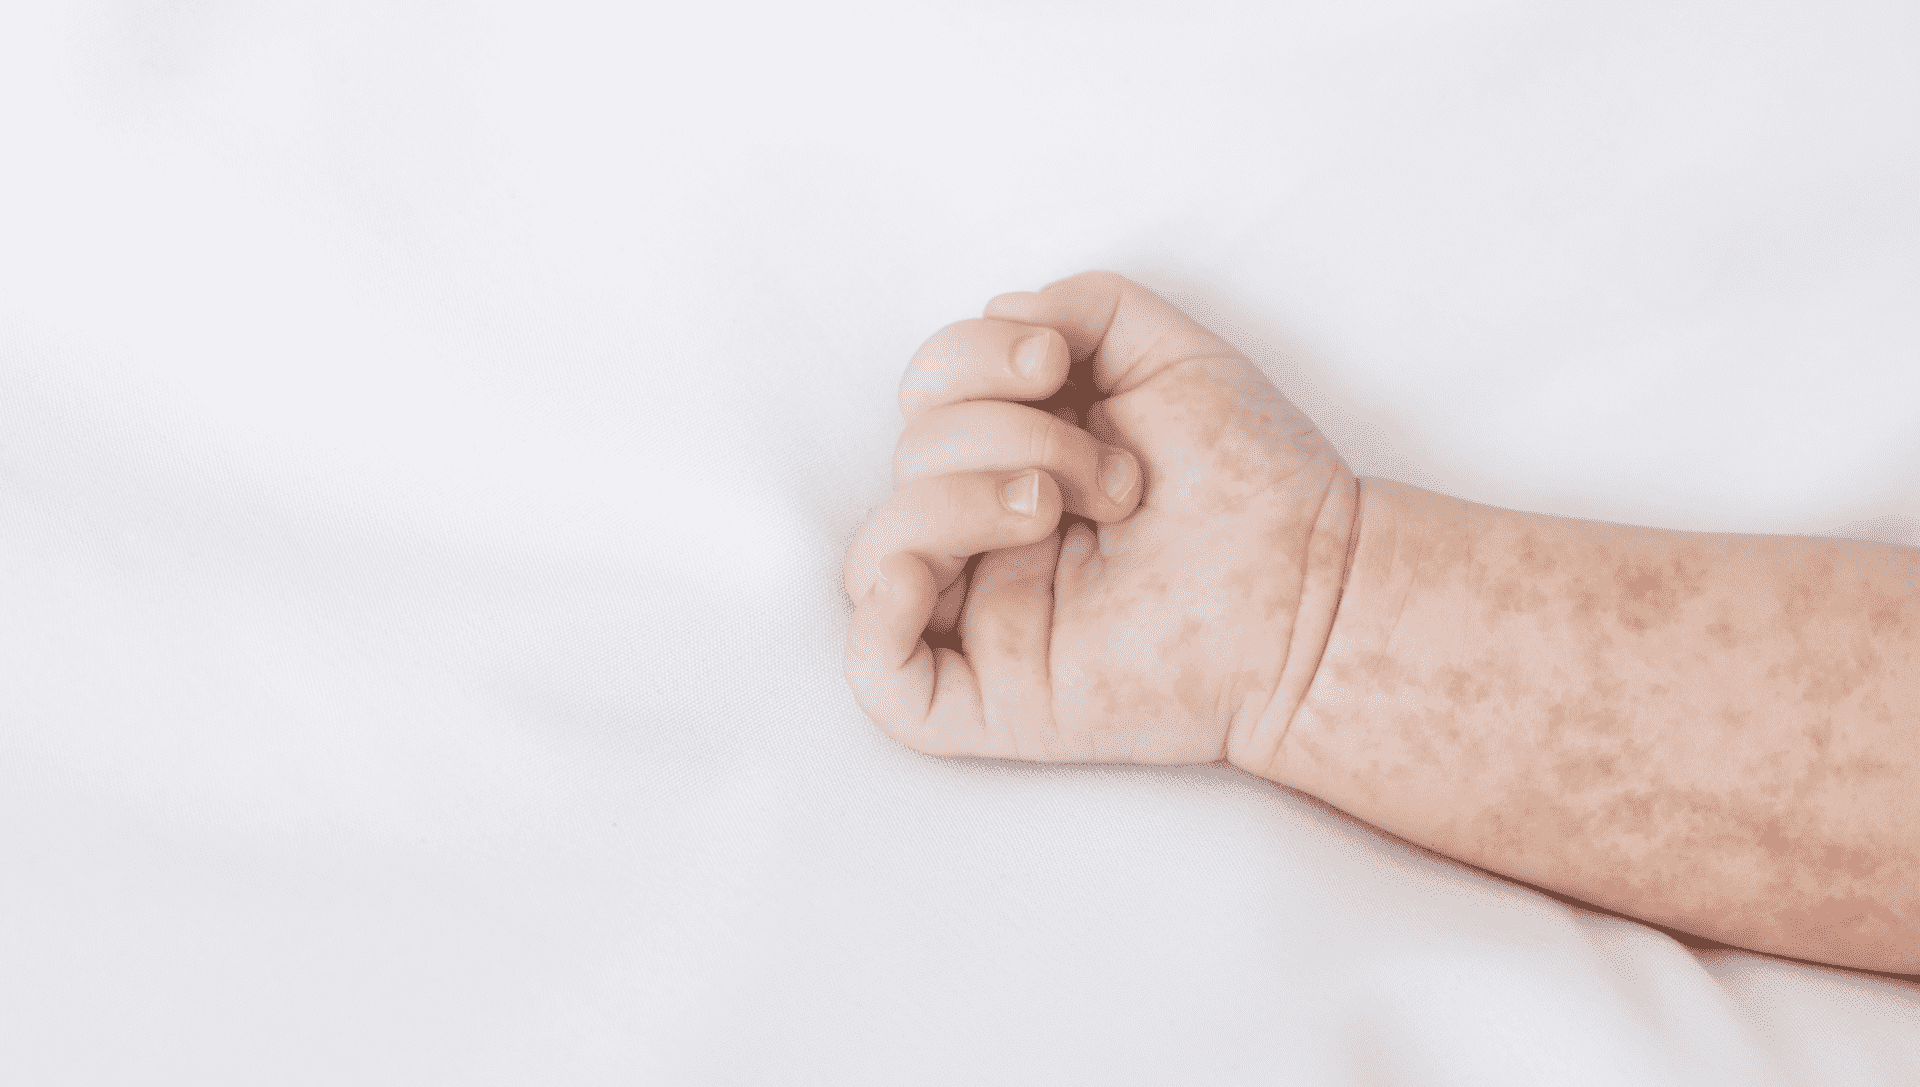 الطفح الجلدي عند الاطفال | 7 علامات تستلزم اللجوء ل مستشفى طواريء للاطمئنان